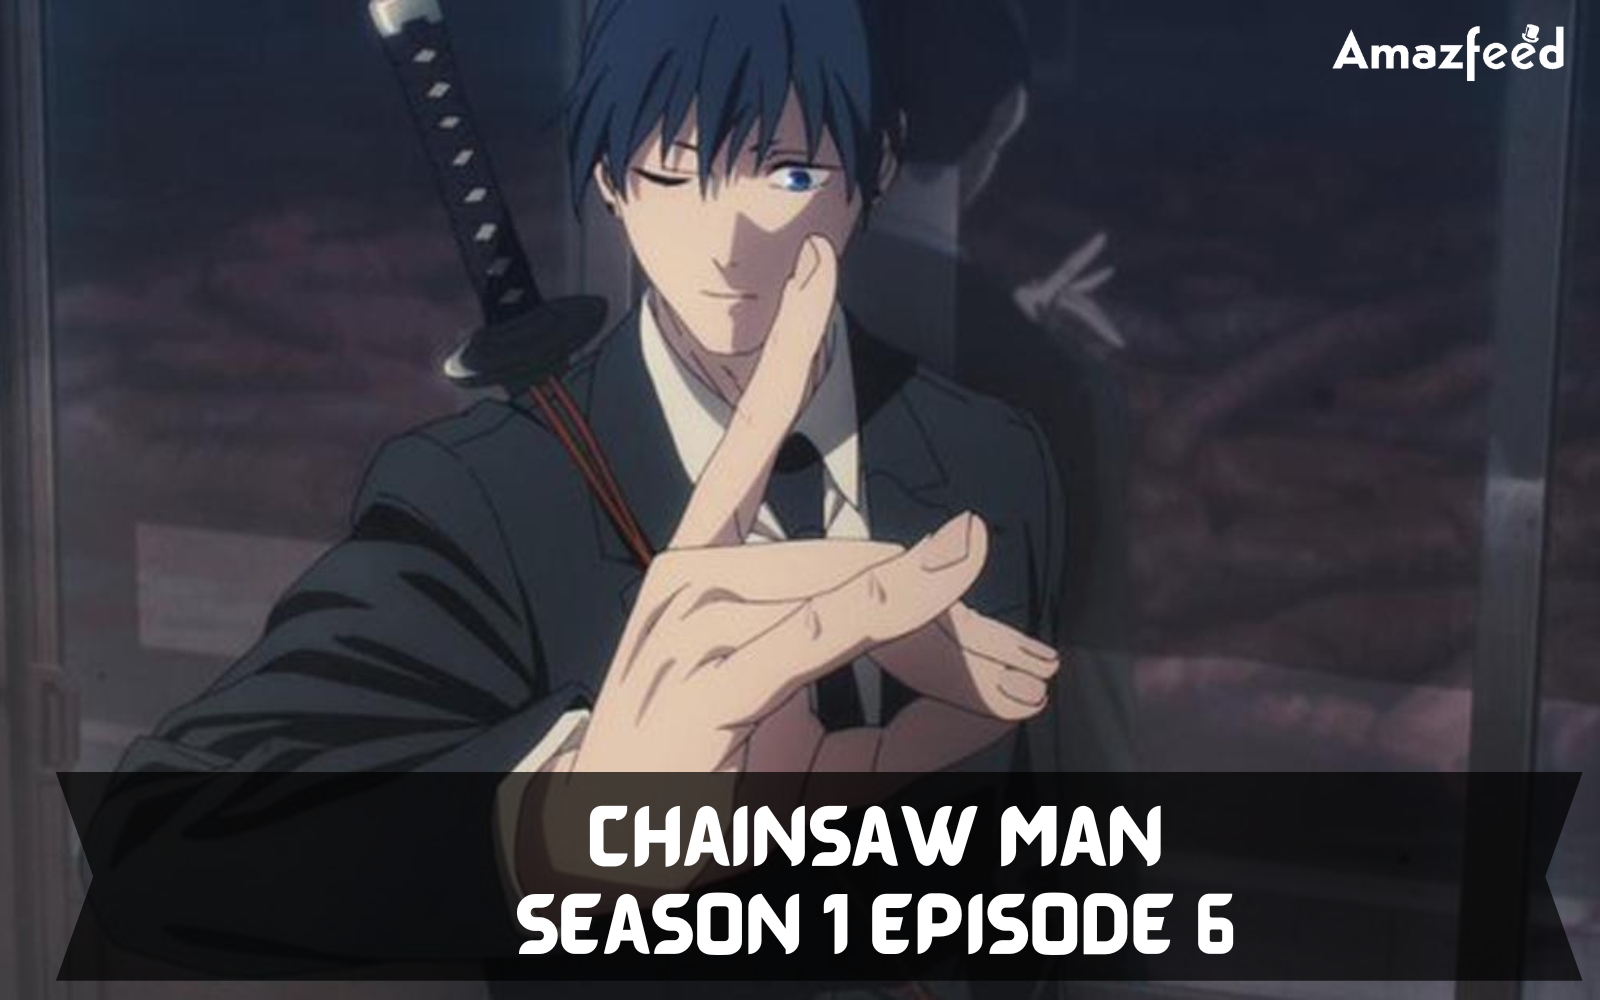 Chainsaw Man Episode 6 Review: Eternal Torment - Animehunch